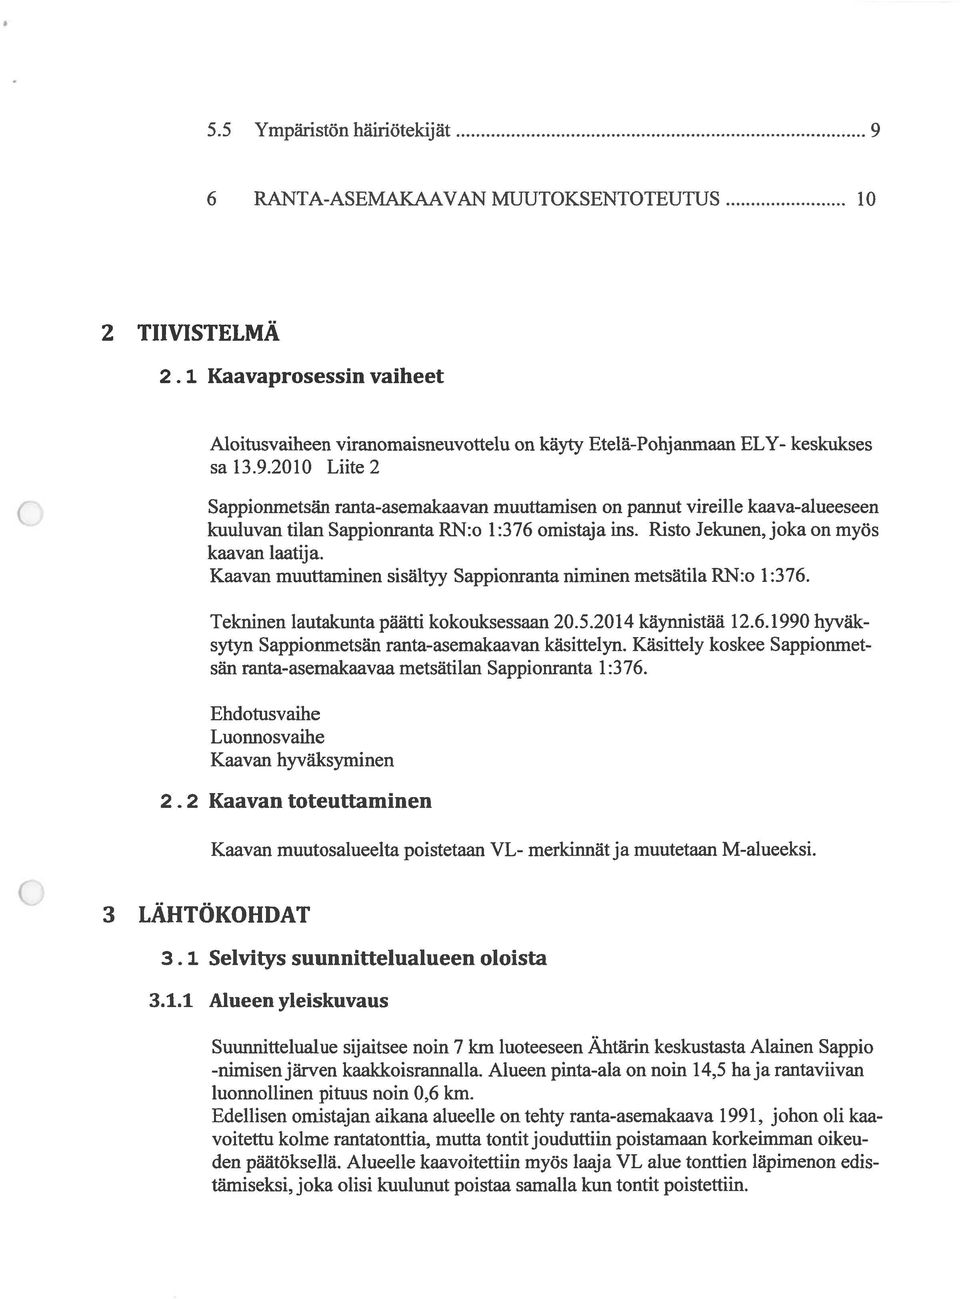 Käsittely koskee Sappionmet sän ranta-asemakaavaa metsätilan Sappionranta 1:376. Ehdotusvaihe Luonnosvaihe Kaavan hyväksyminen 2.